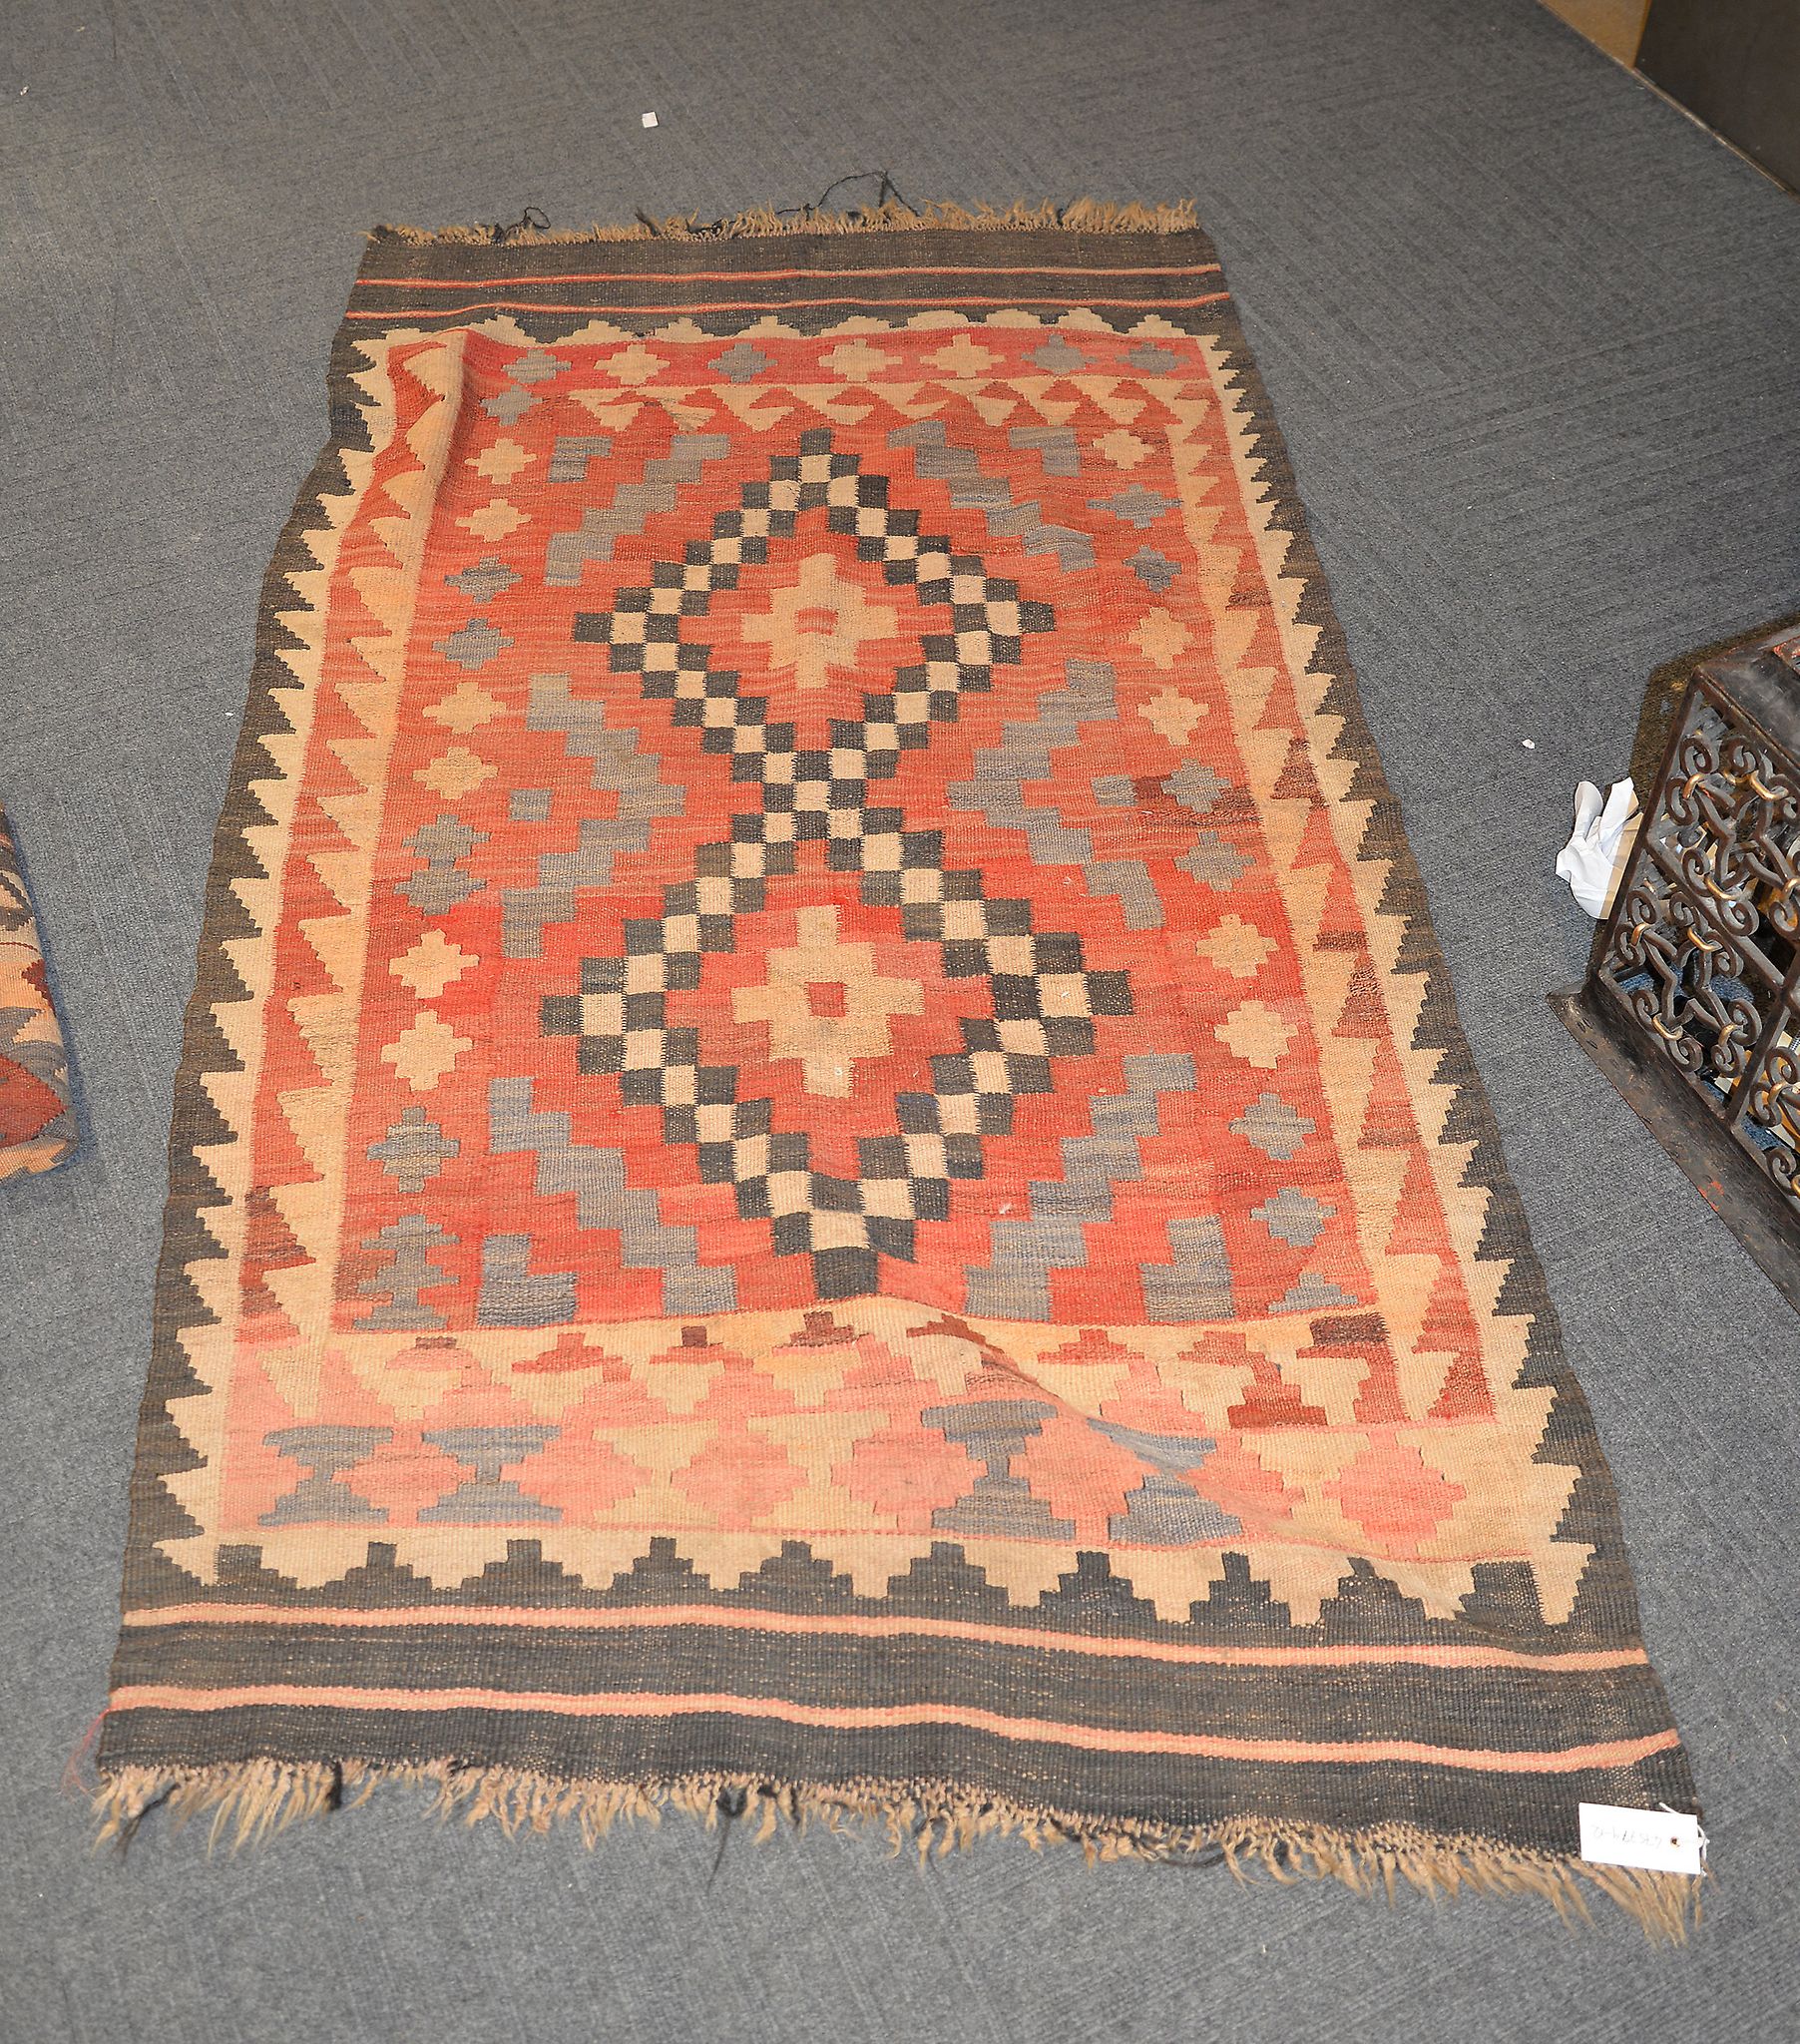 Four similar Kilim style rugs, various sizes - Image 2 of 4